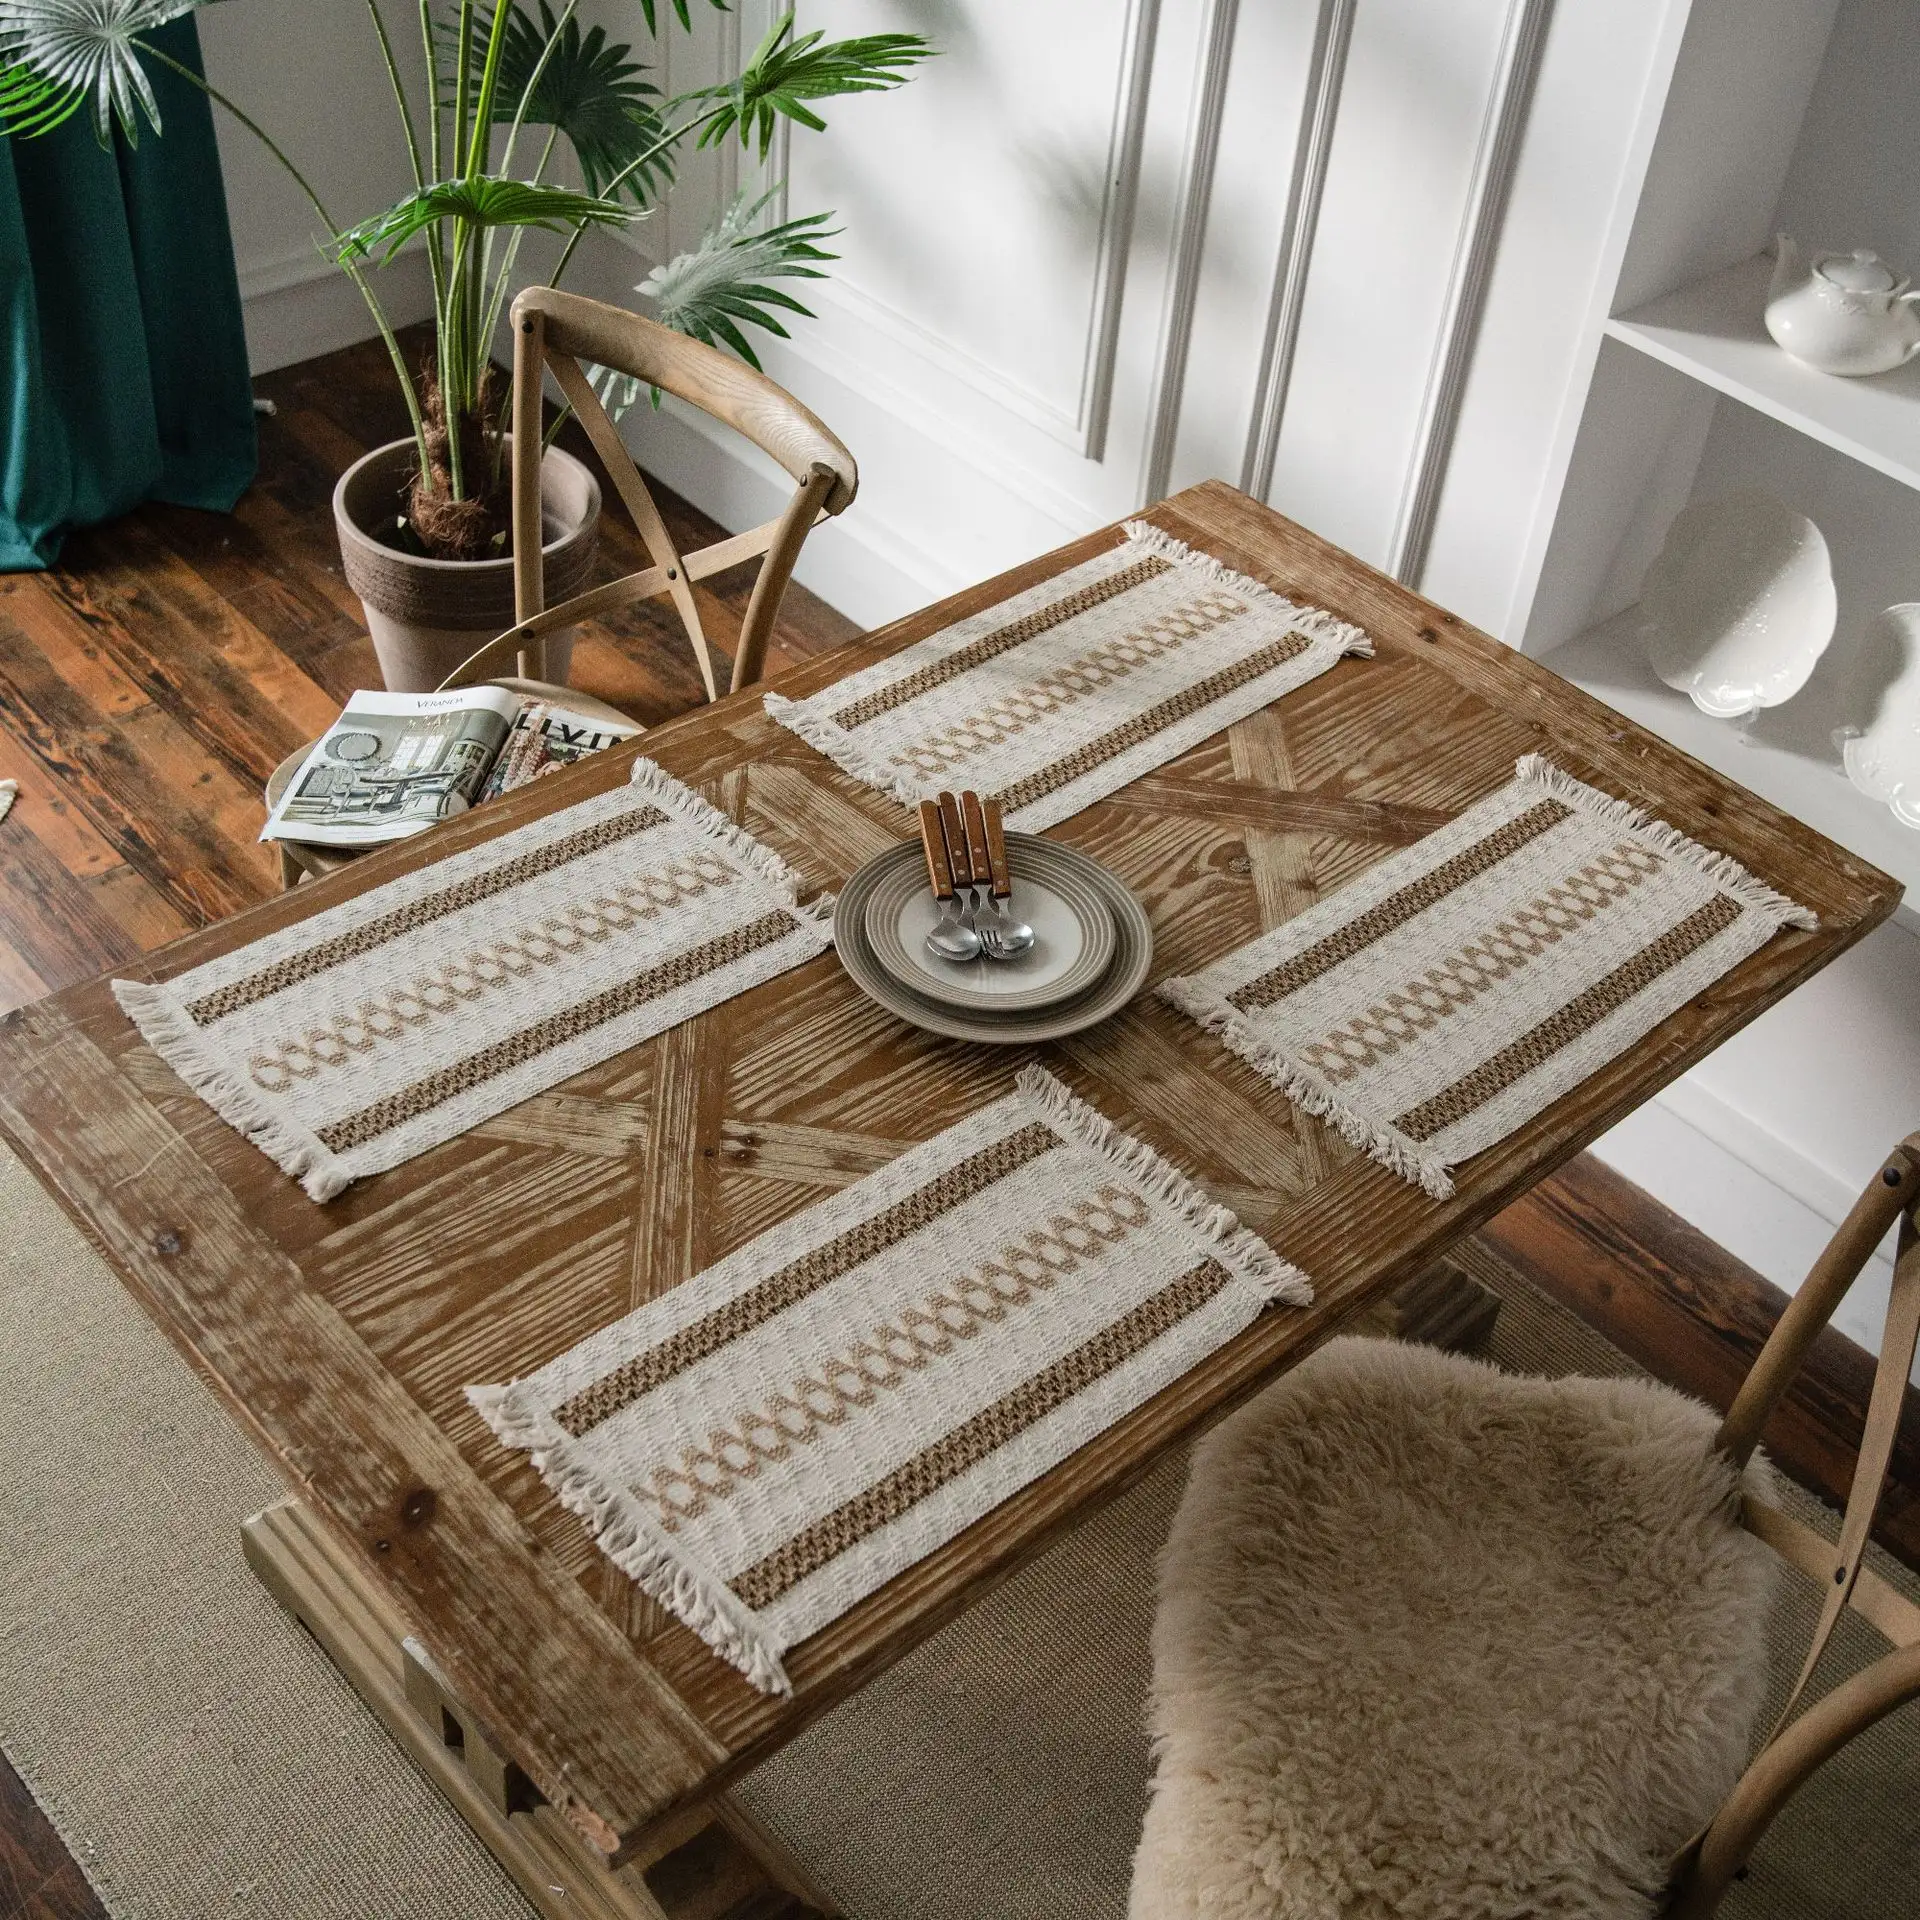 Amerikanische Baumwolle & 100% natürliches Leinen hand gefertigte gewebte Streifen feste Quasten Tisch läufer Esstisch Matte Plater Matte Stuhl polster